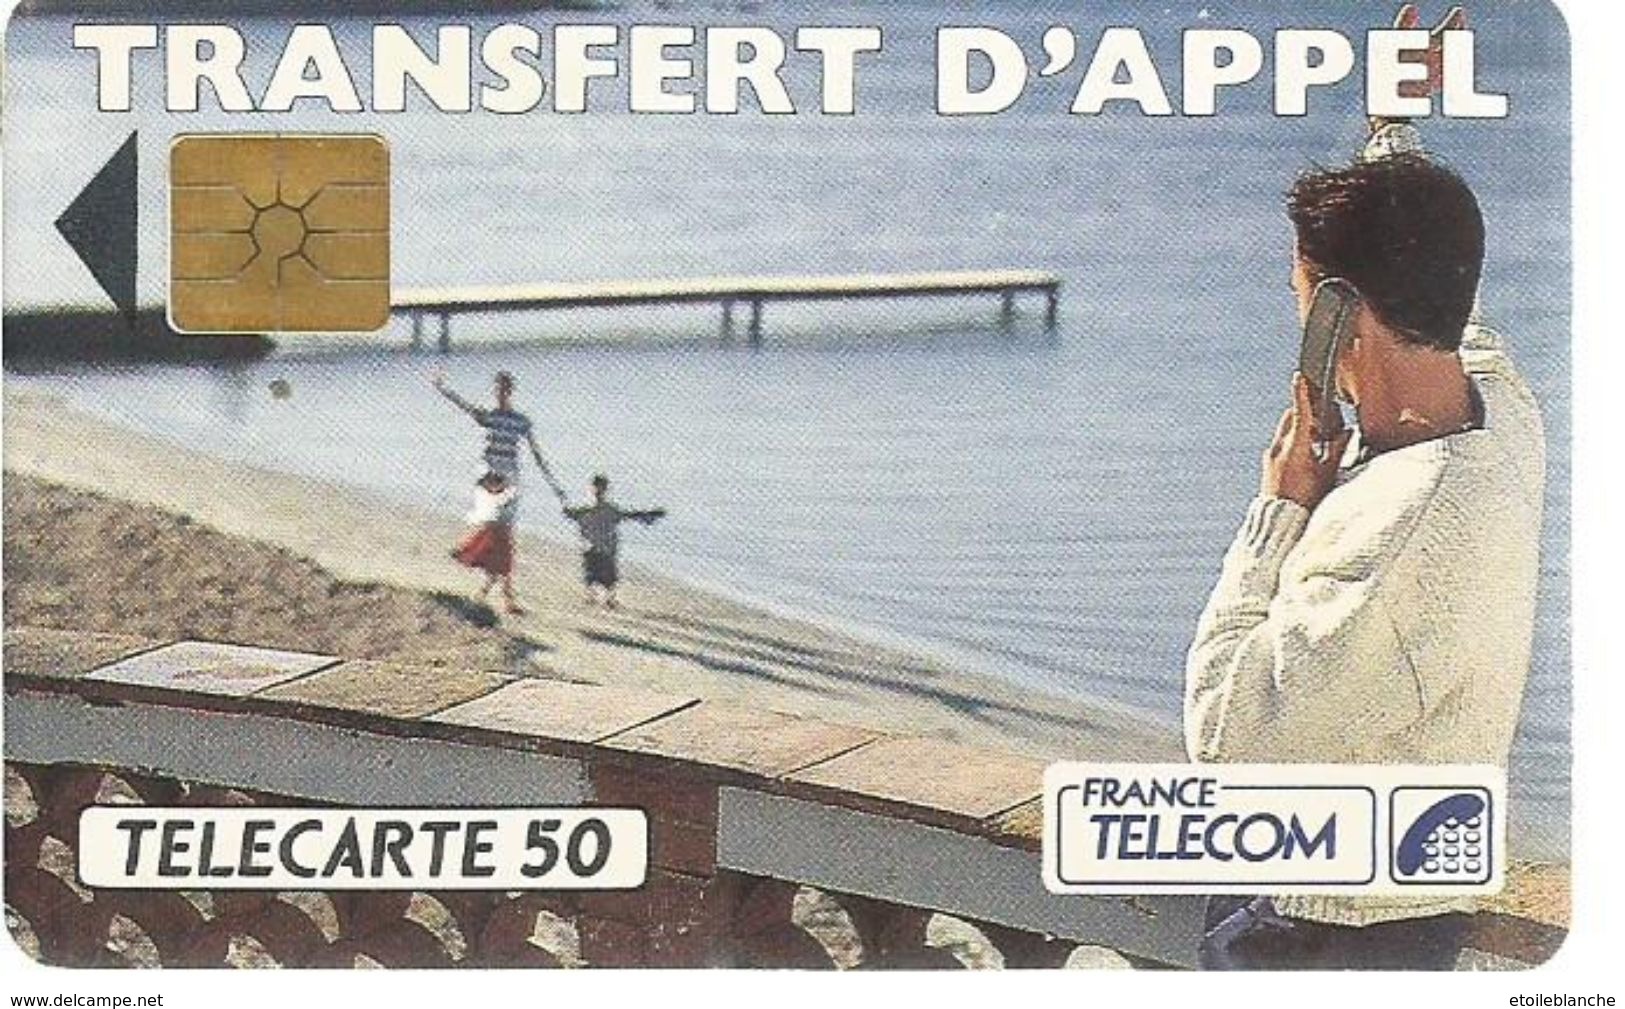 Telecarte France Telecom 1992 - Publicité, Transfert D'appel - Homme En Vacances, Plage, Famille - Telecom